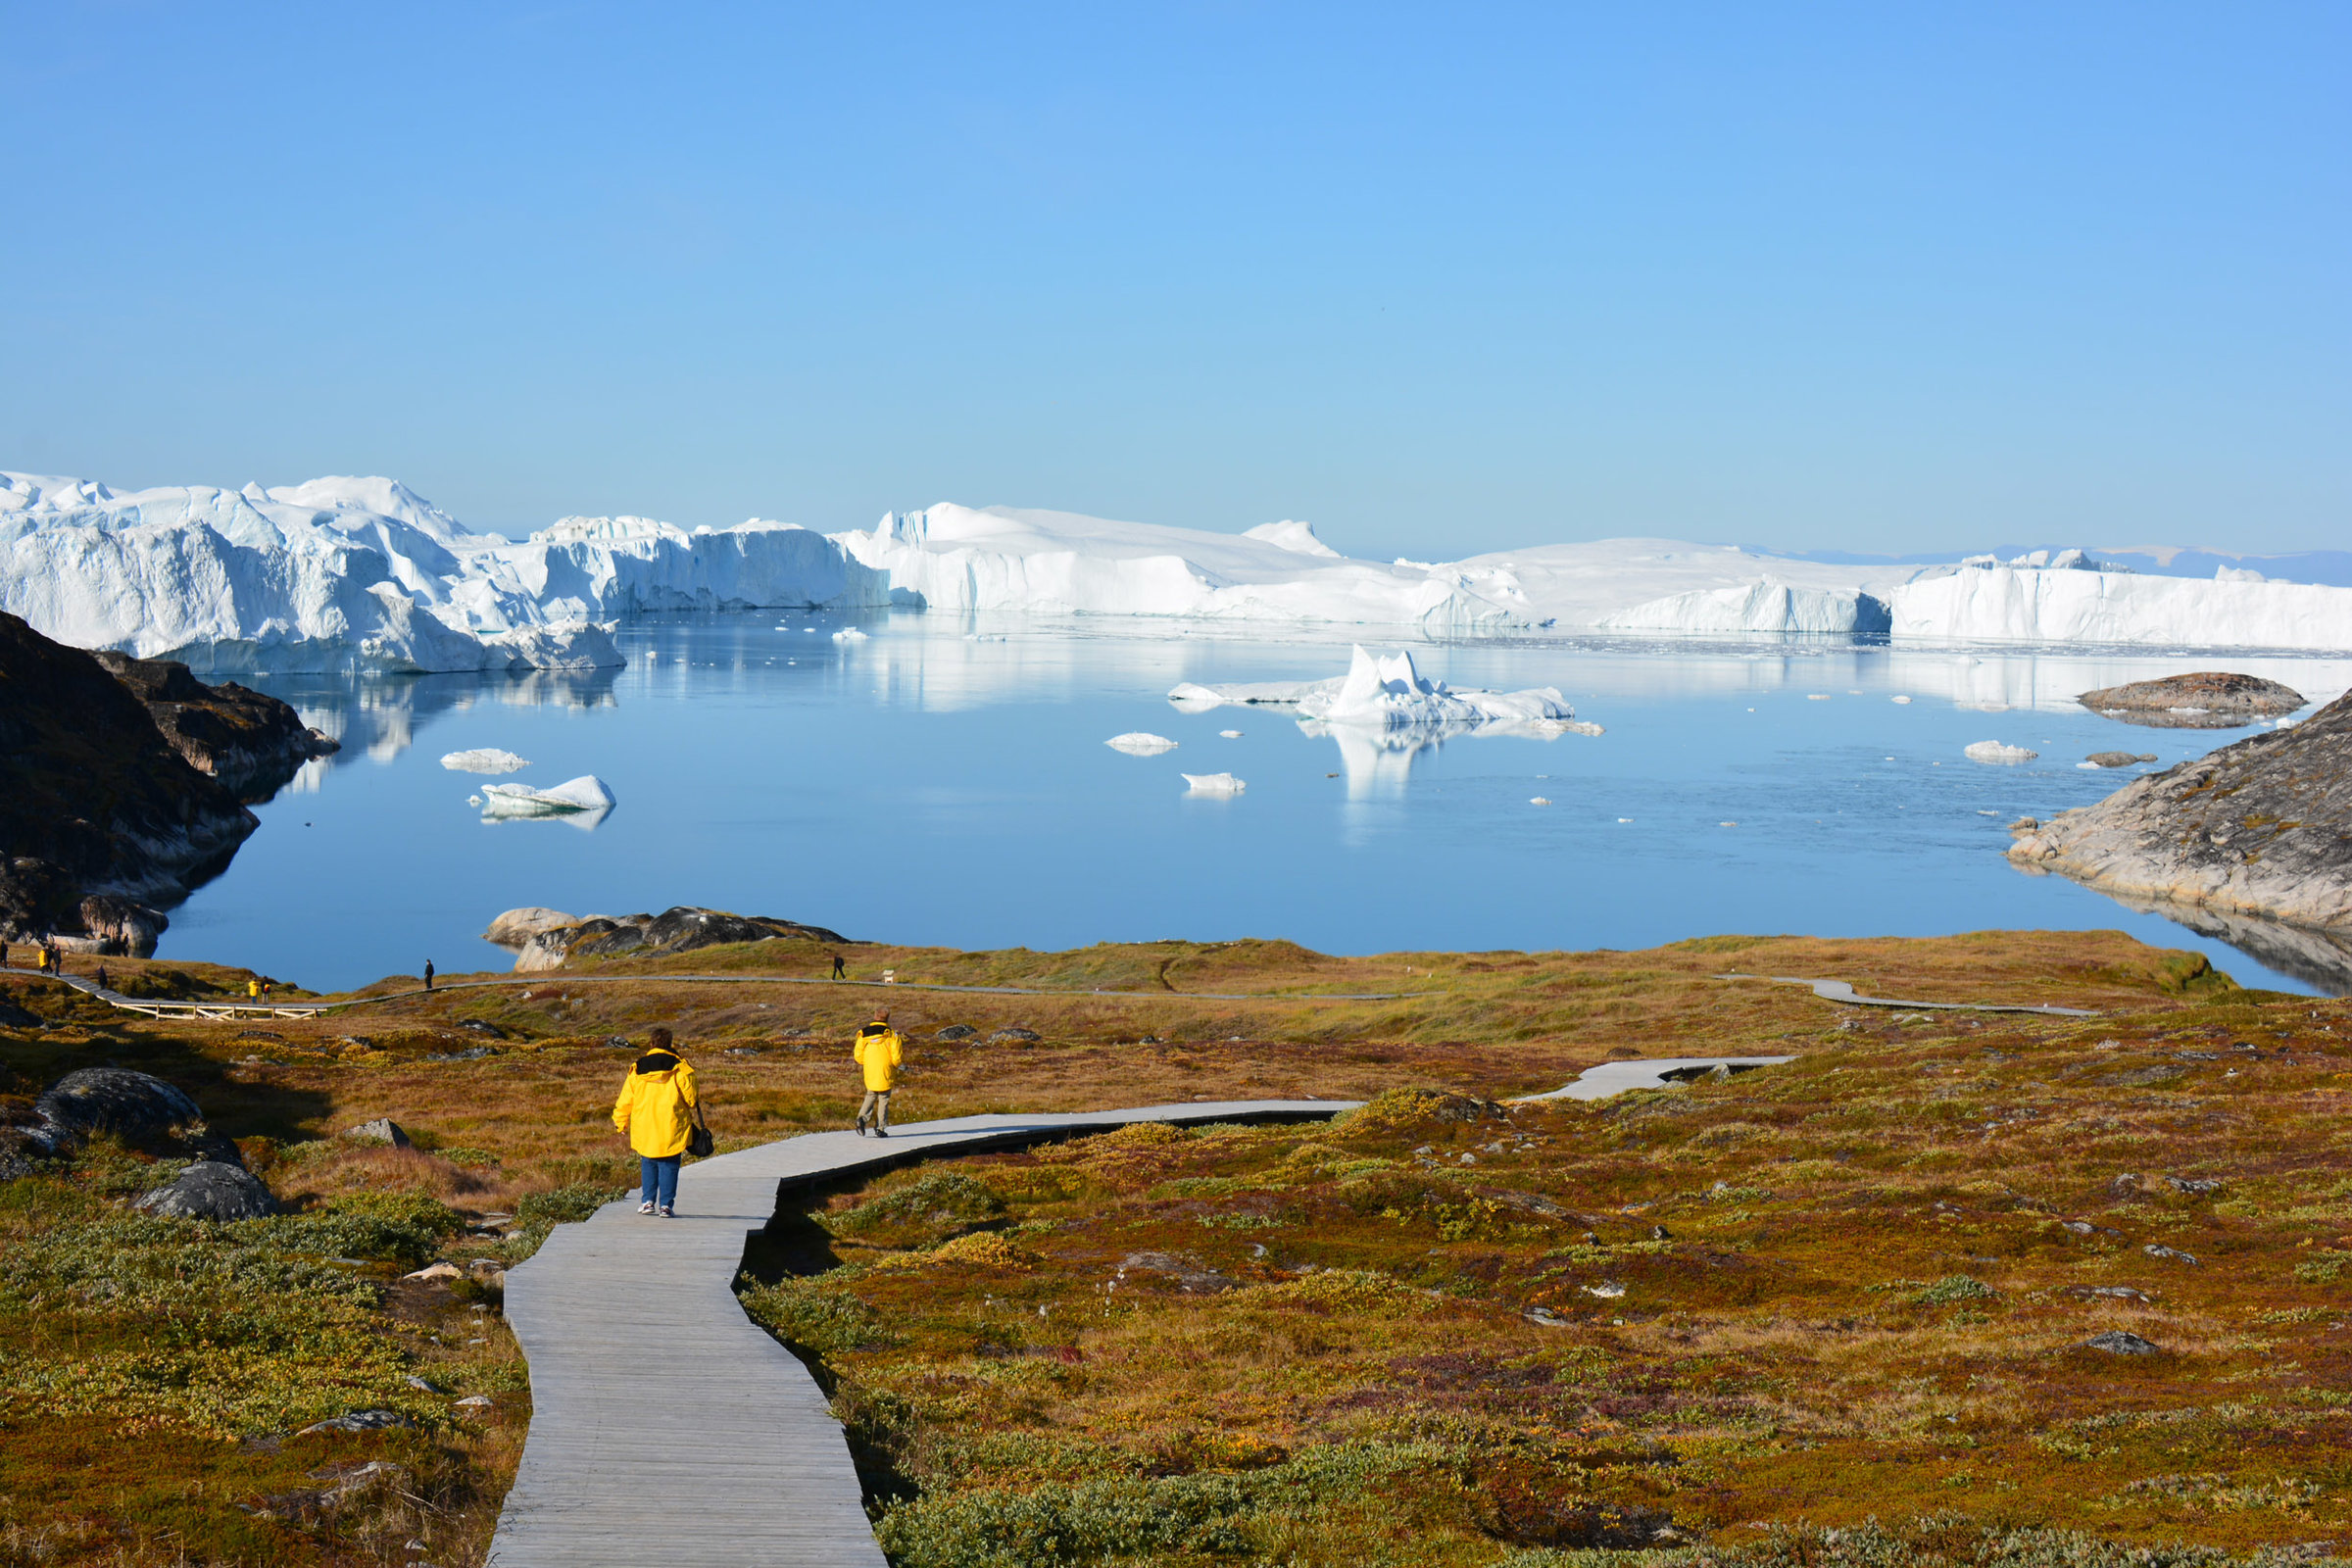 Самый северный нац парк. Остров Баффинова земля Канада. Гренландия Баффинова земля. Канадский Арктический архипелаг Баффинова земля.